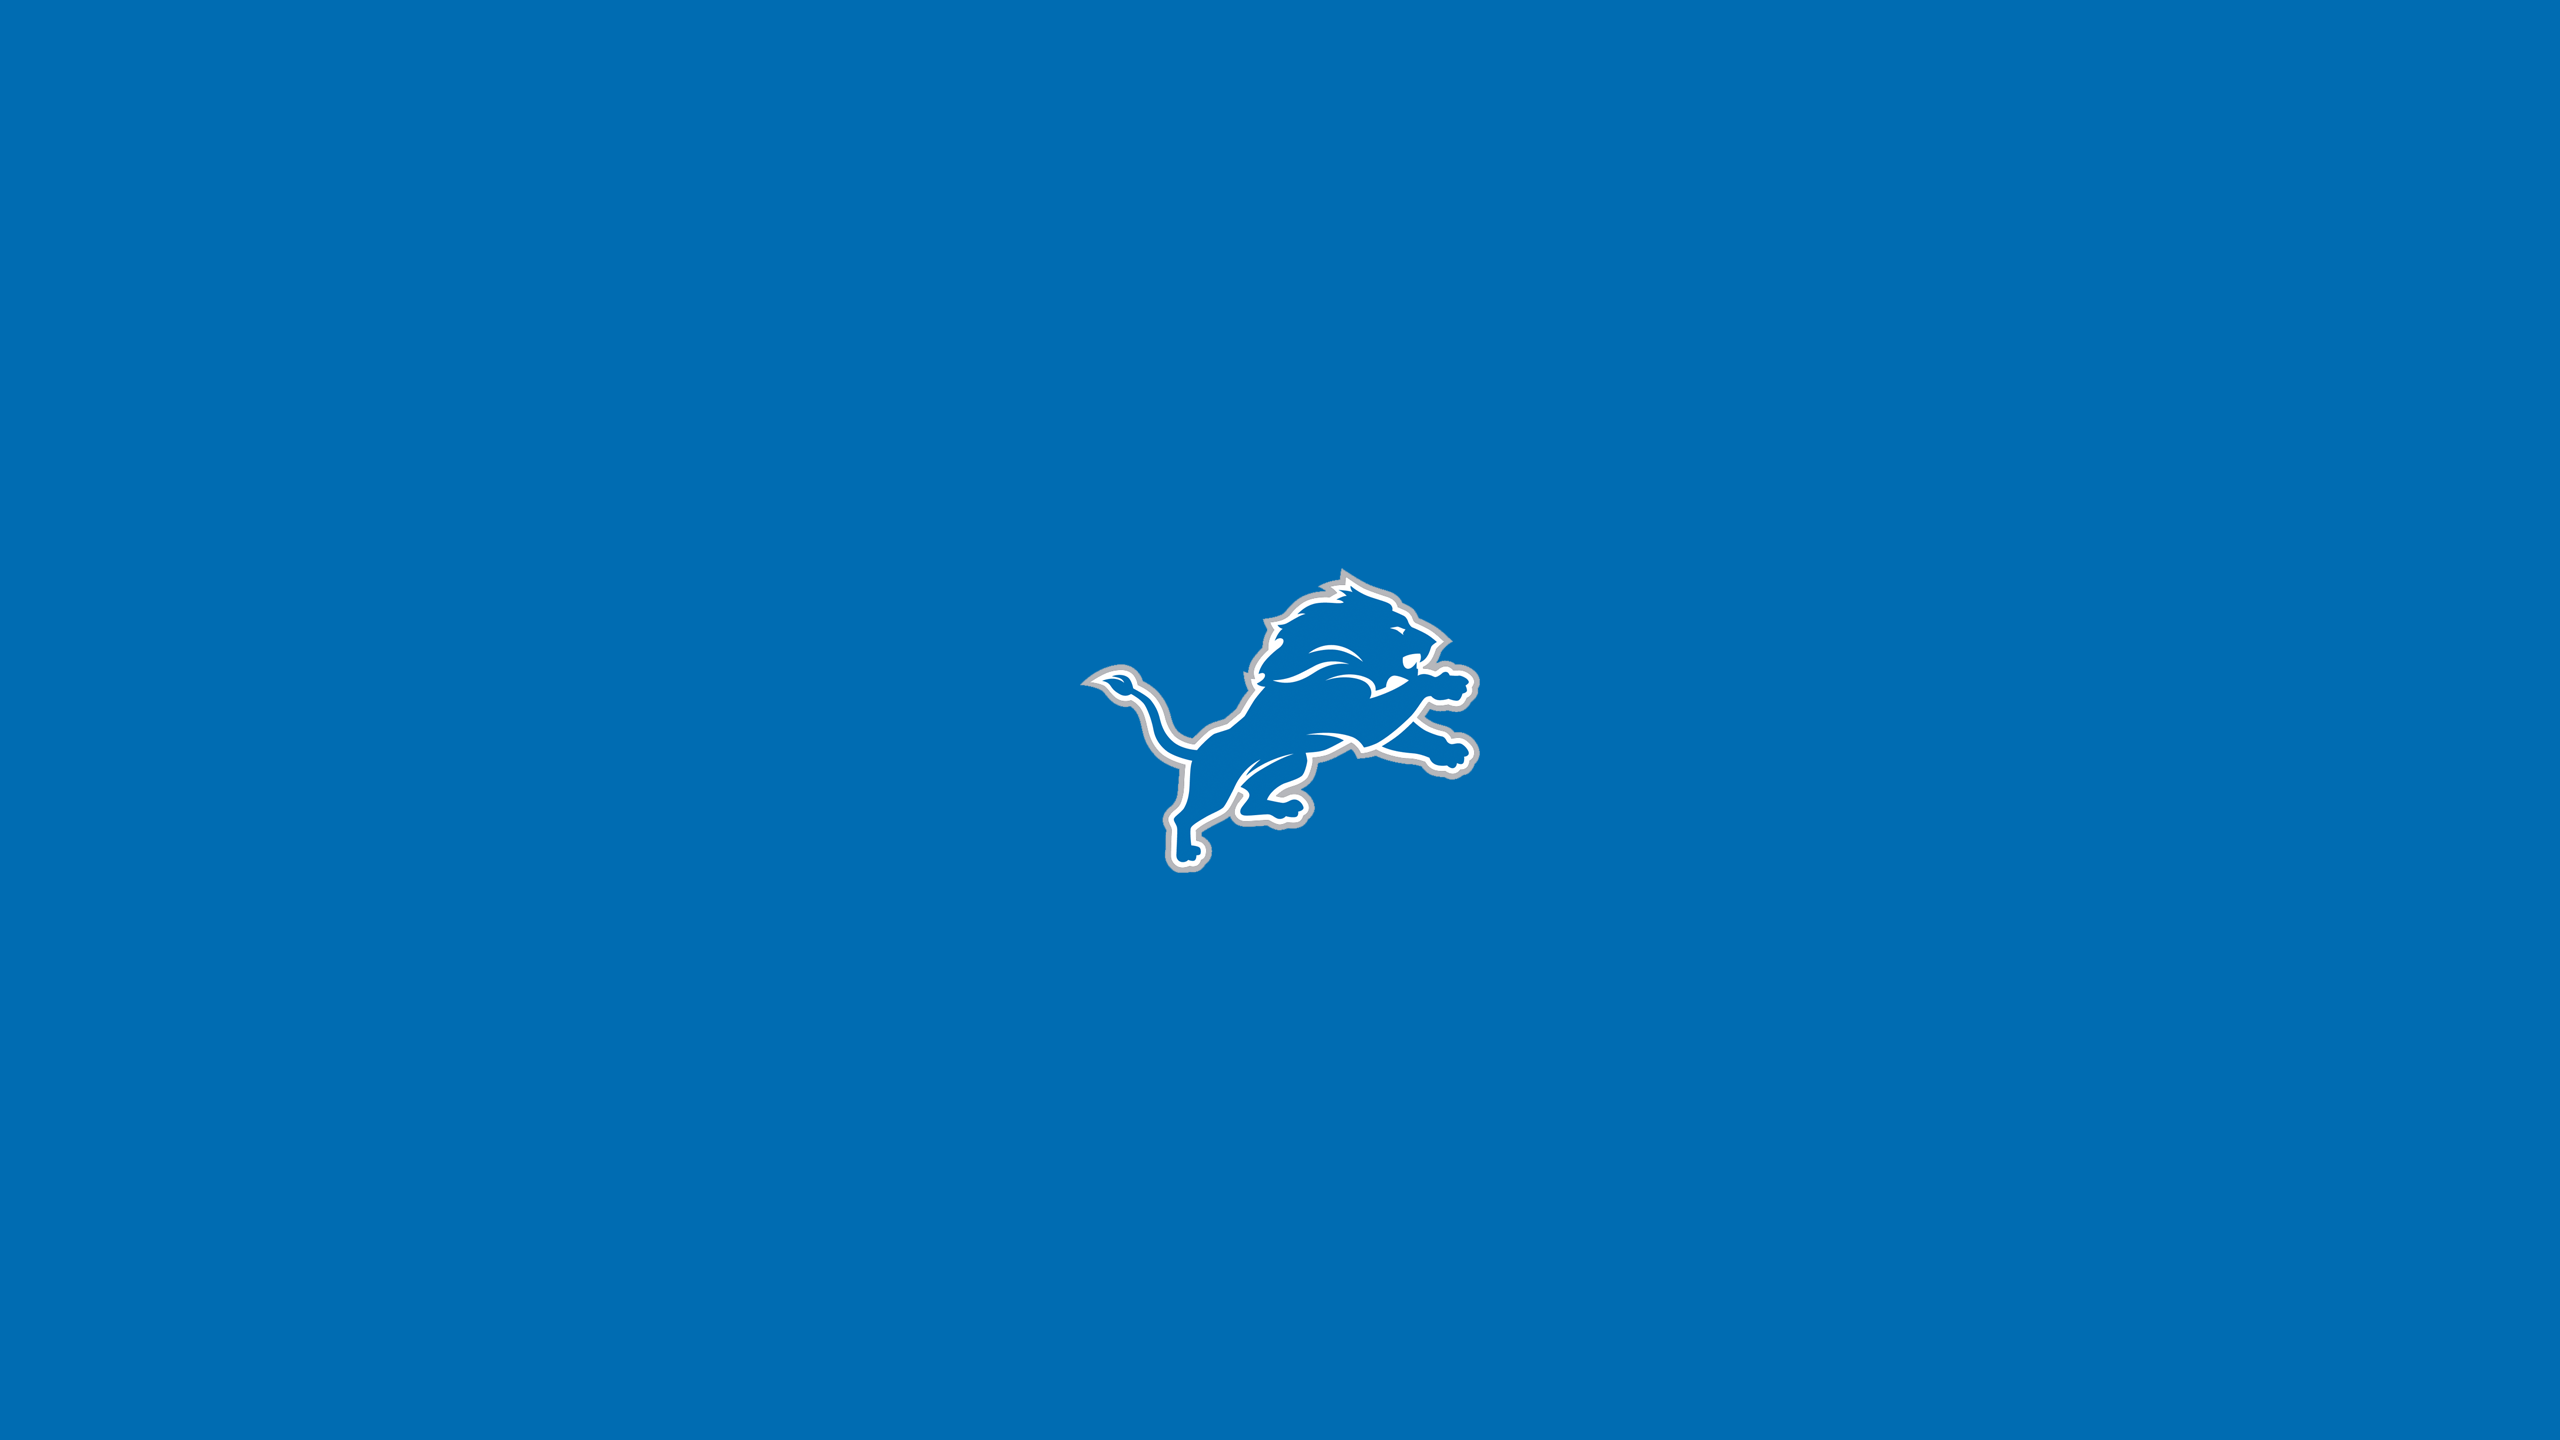 Detroit Lions - NFL - Square Bettor